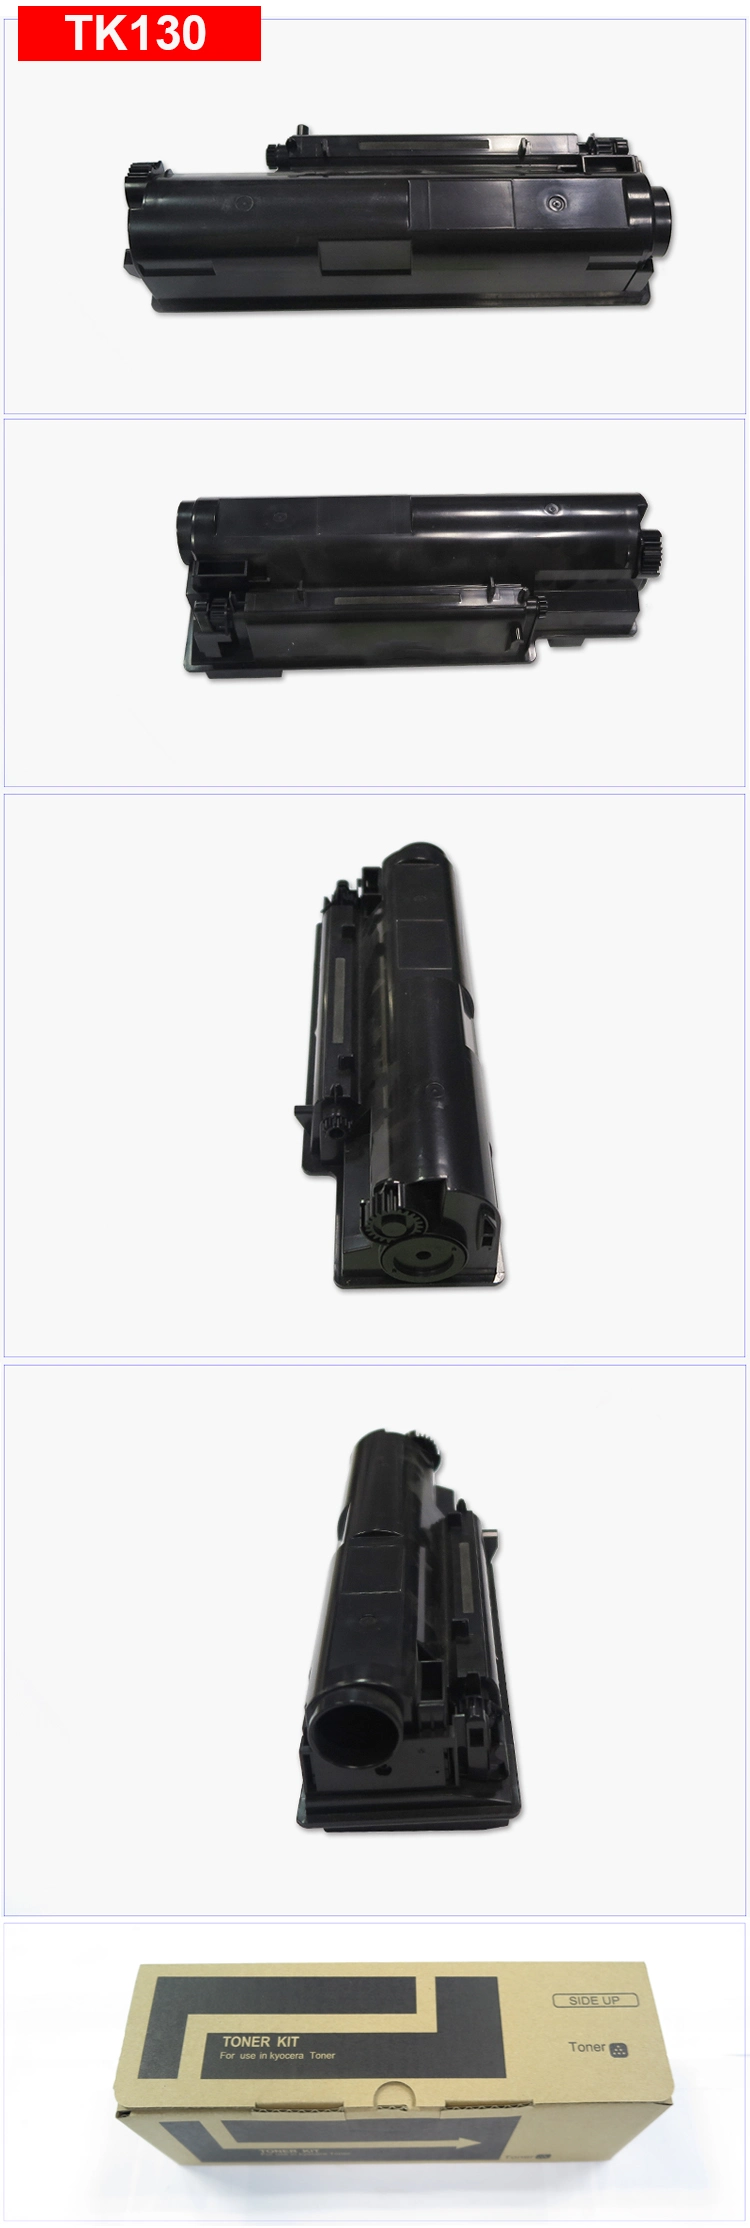 Compatible Kyocera Tk140 Toner Kit Cartridge for Laser Copier Kyocera Fs - 1100 Toner